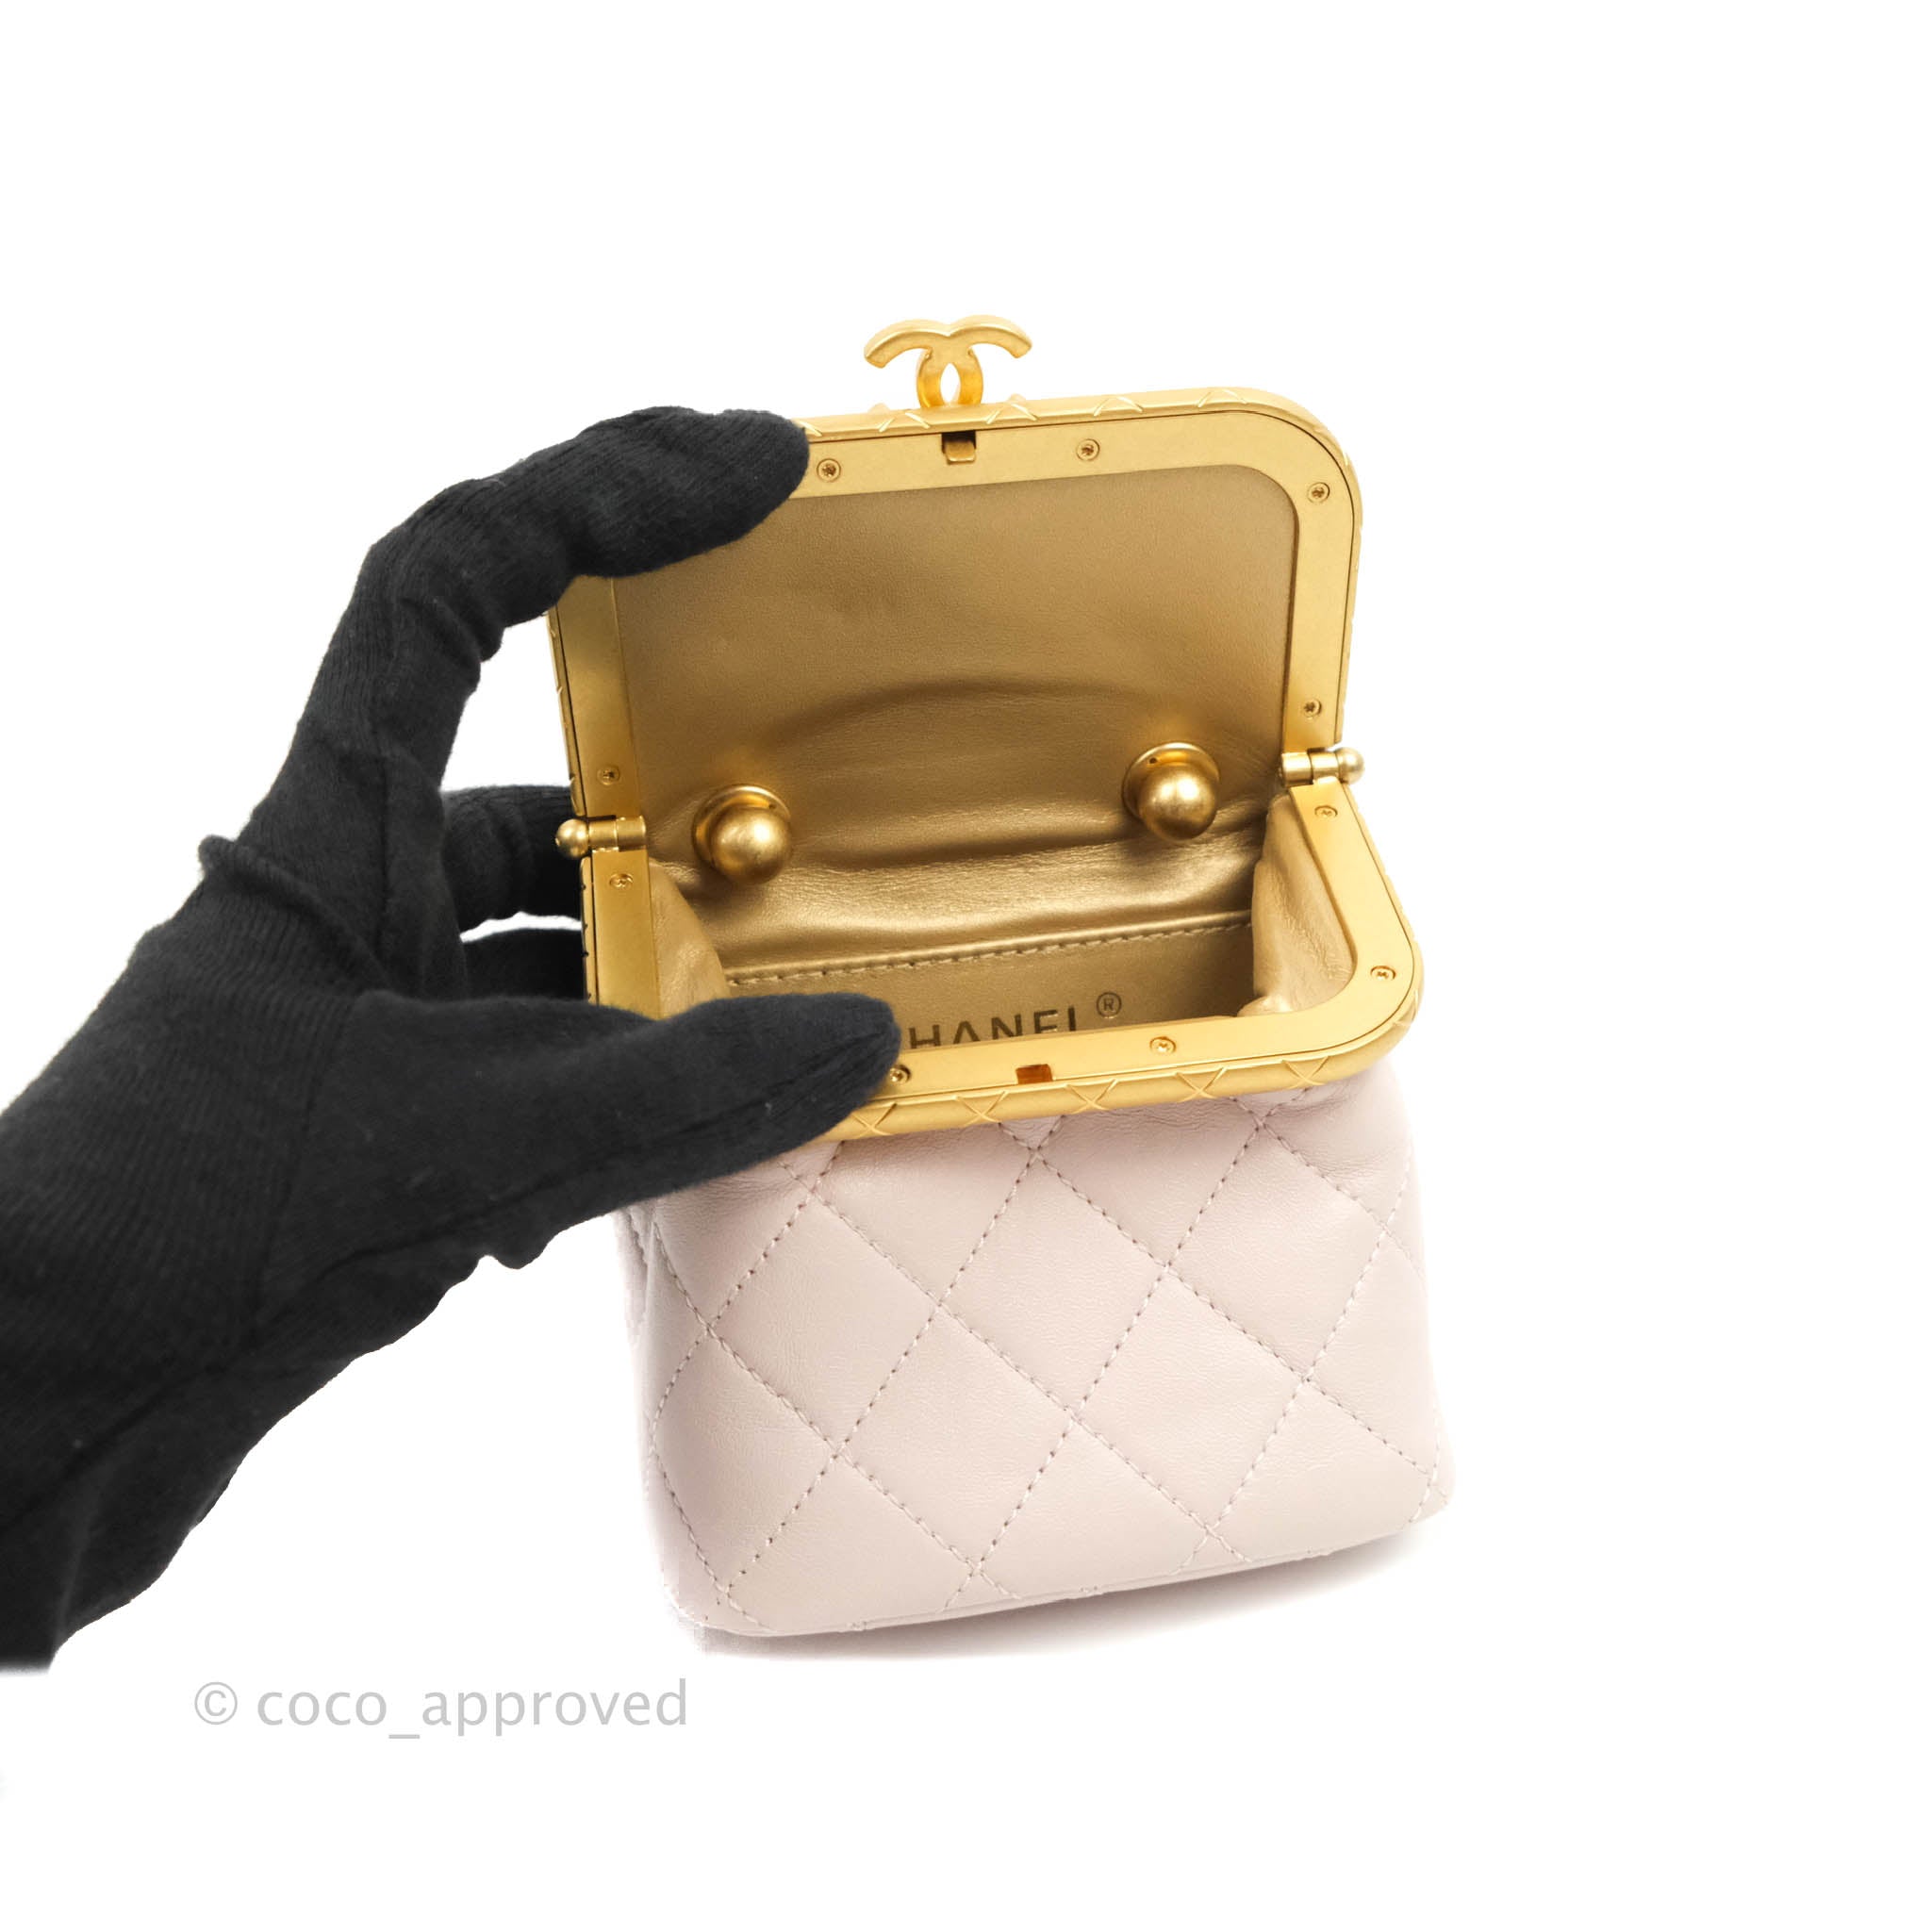 Chanel Kiss-Lock Lambskin Mini Bag